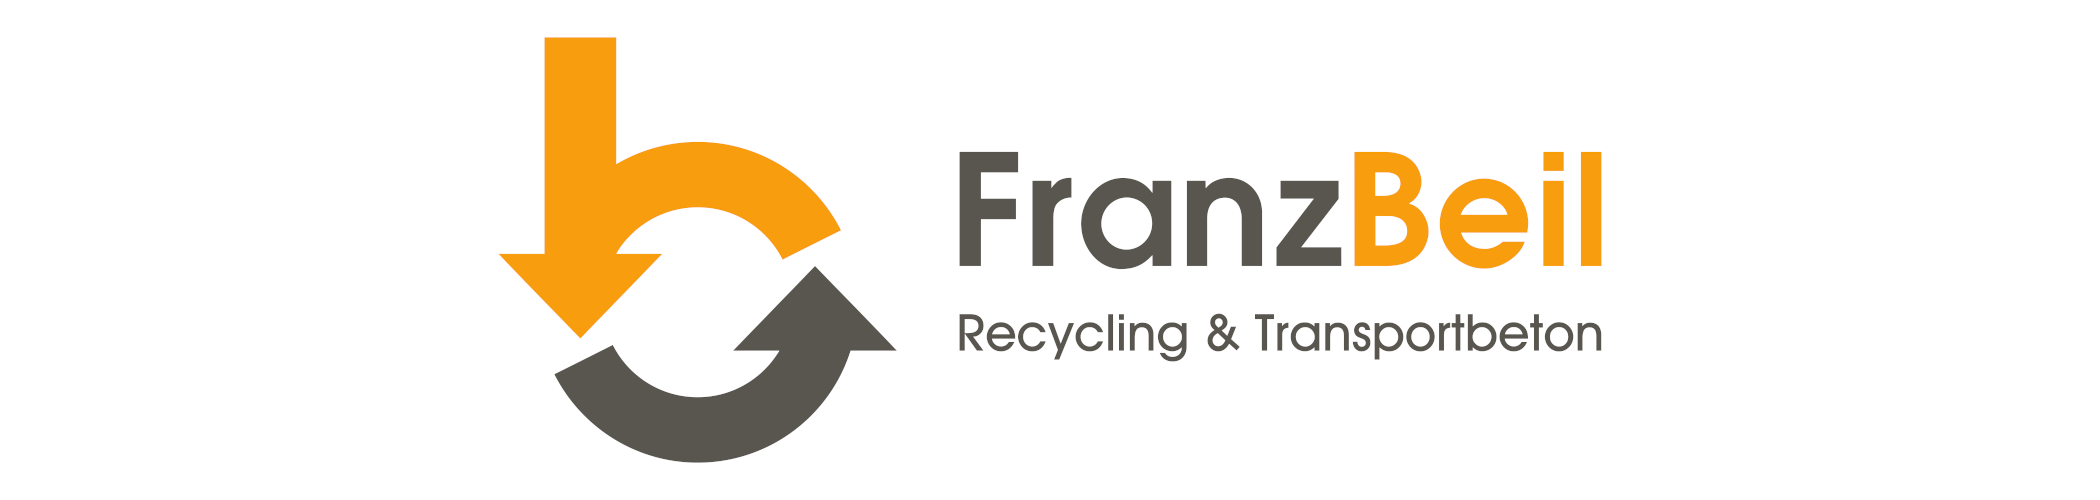 Franz Beil - Recycling&Transportbeton